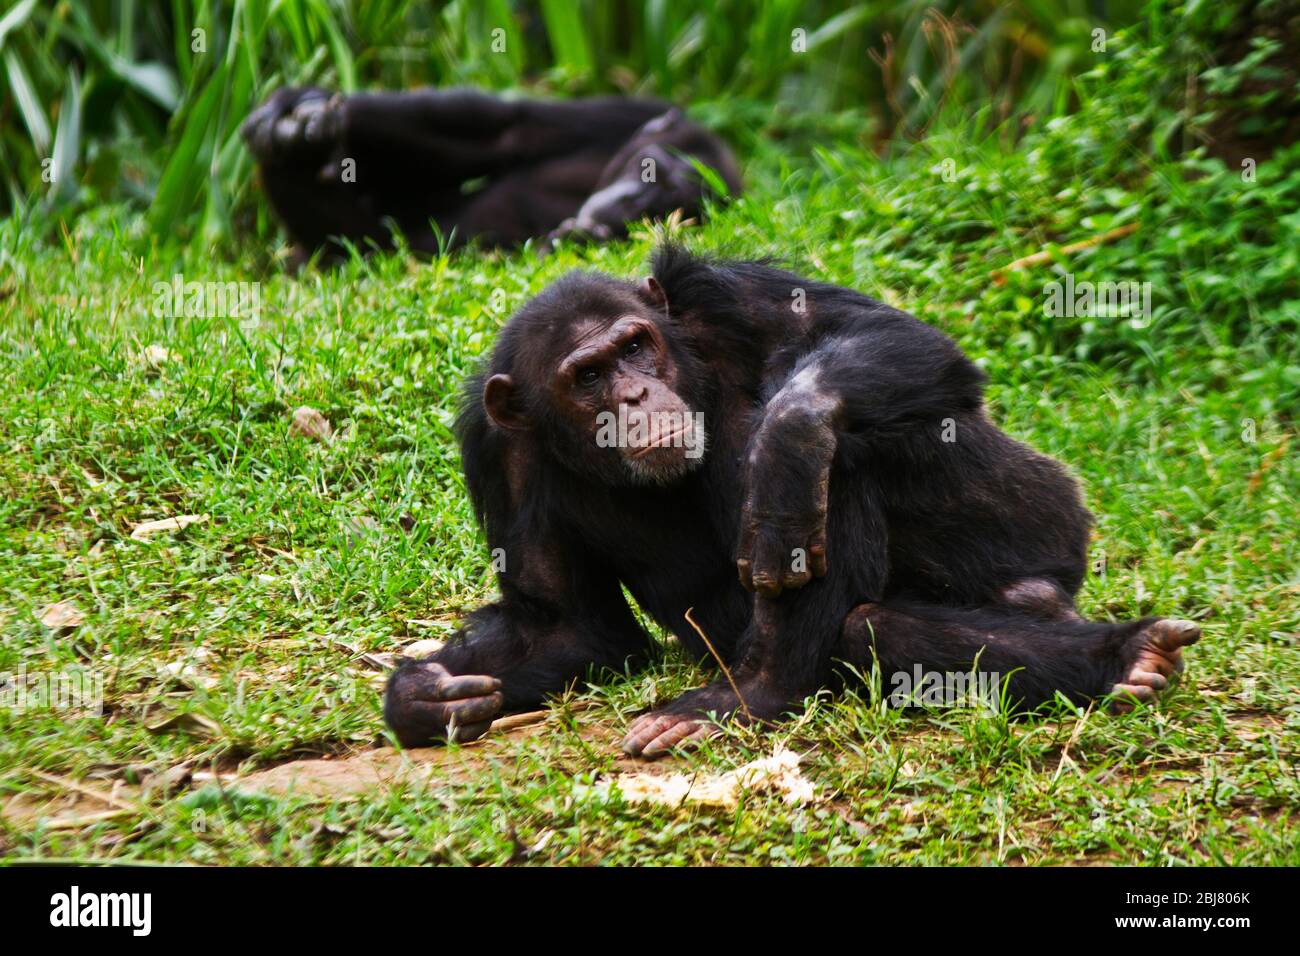 Ein reifer Rüde Chimpanzee entspannt sich während einer Siesta während der Hitze des Tages. Männchen sind immer wachsam und bereit, die Weibchen und Jungen zu schützen Stockfoto